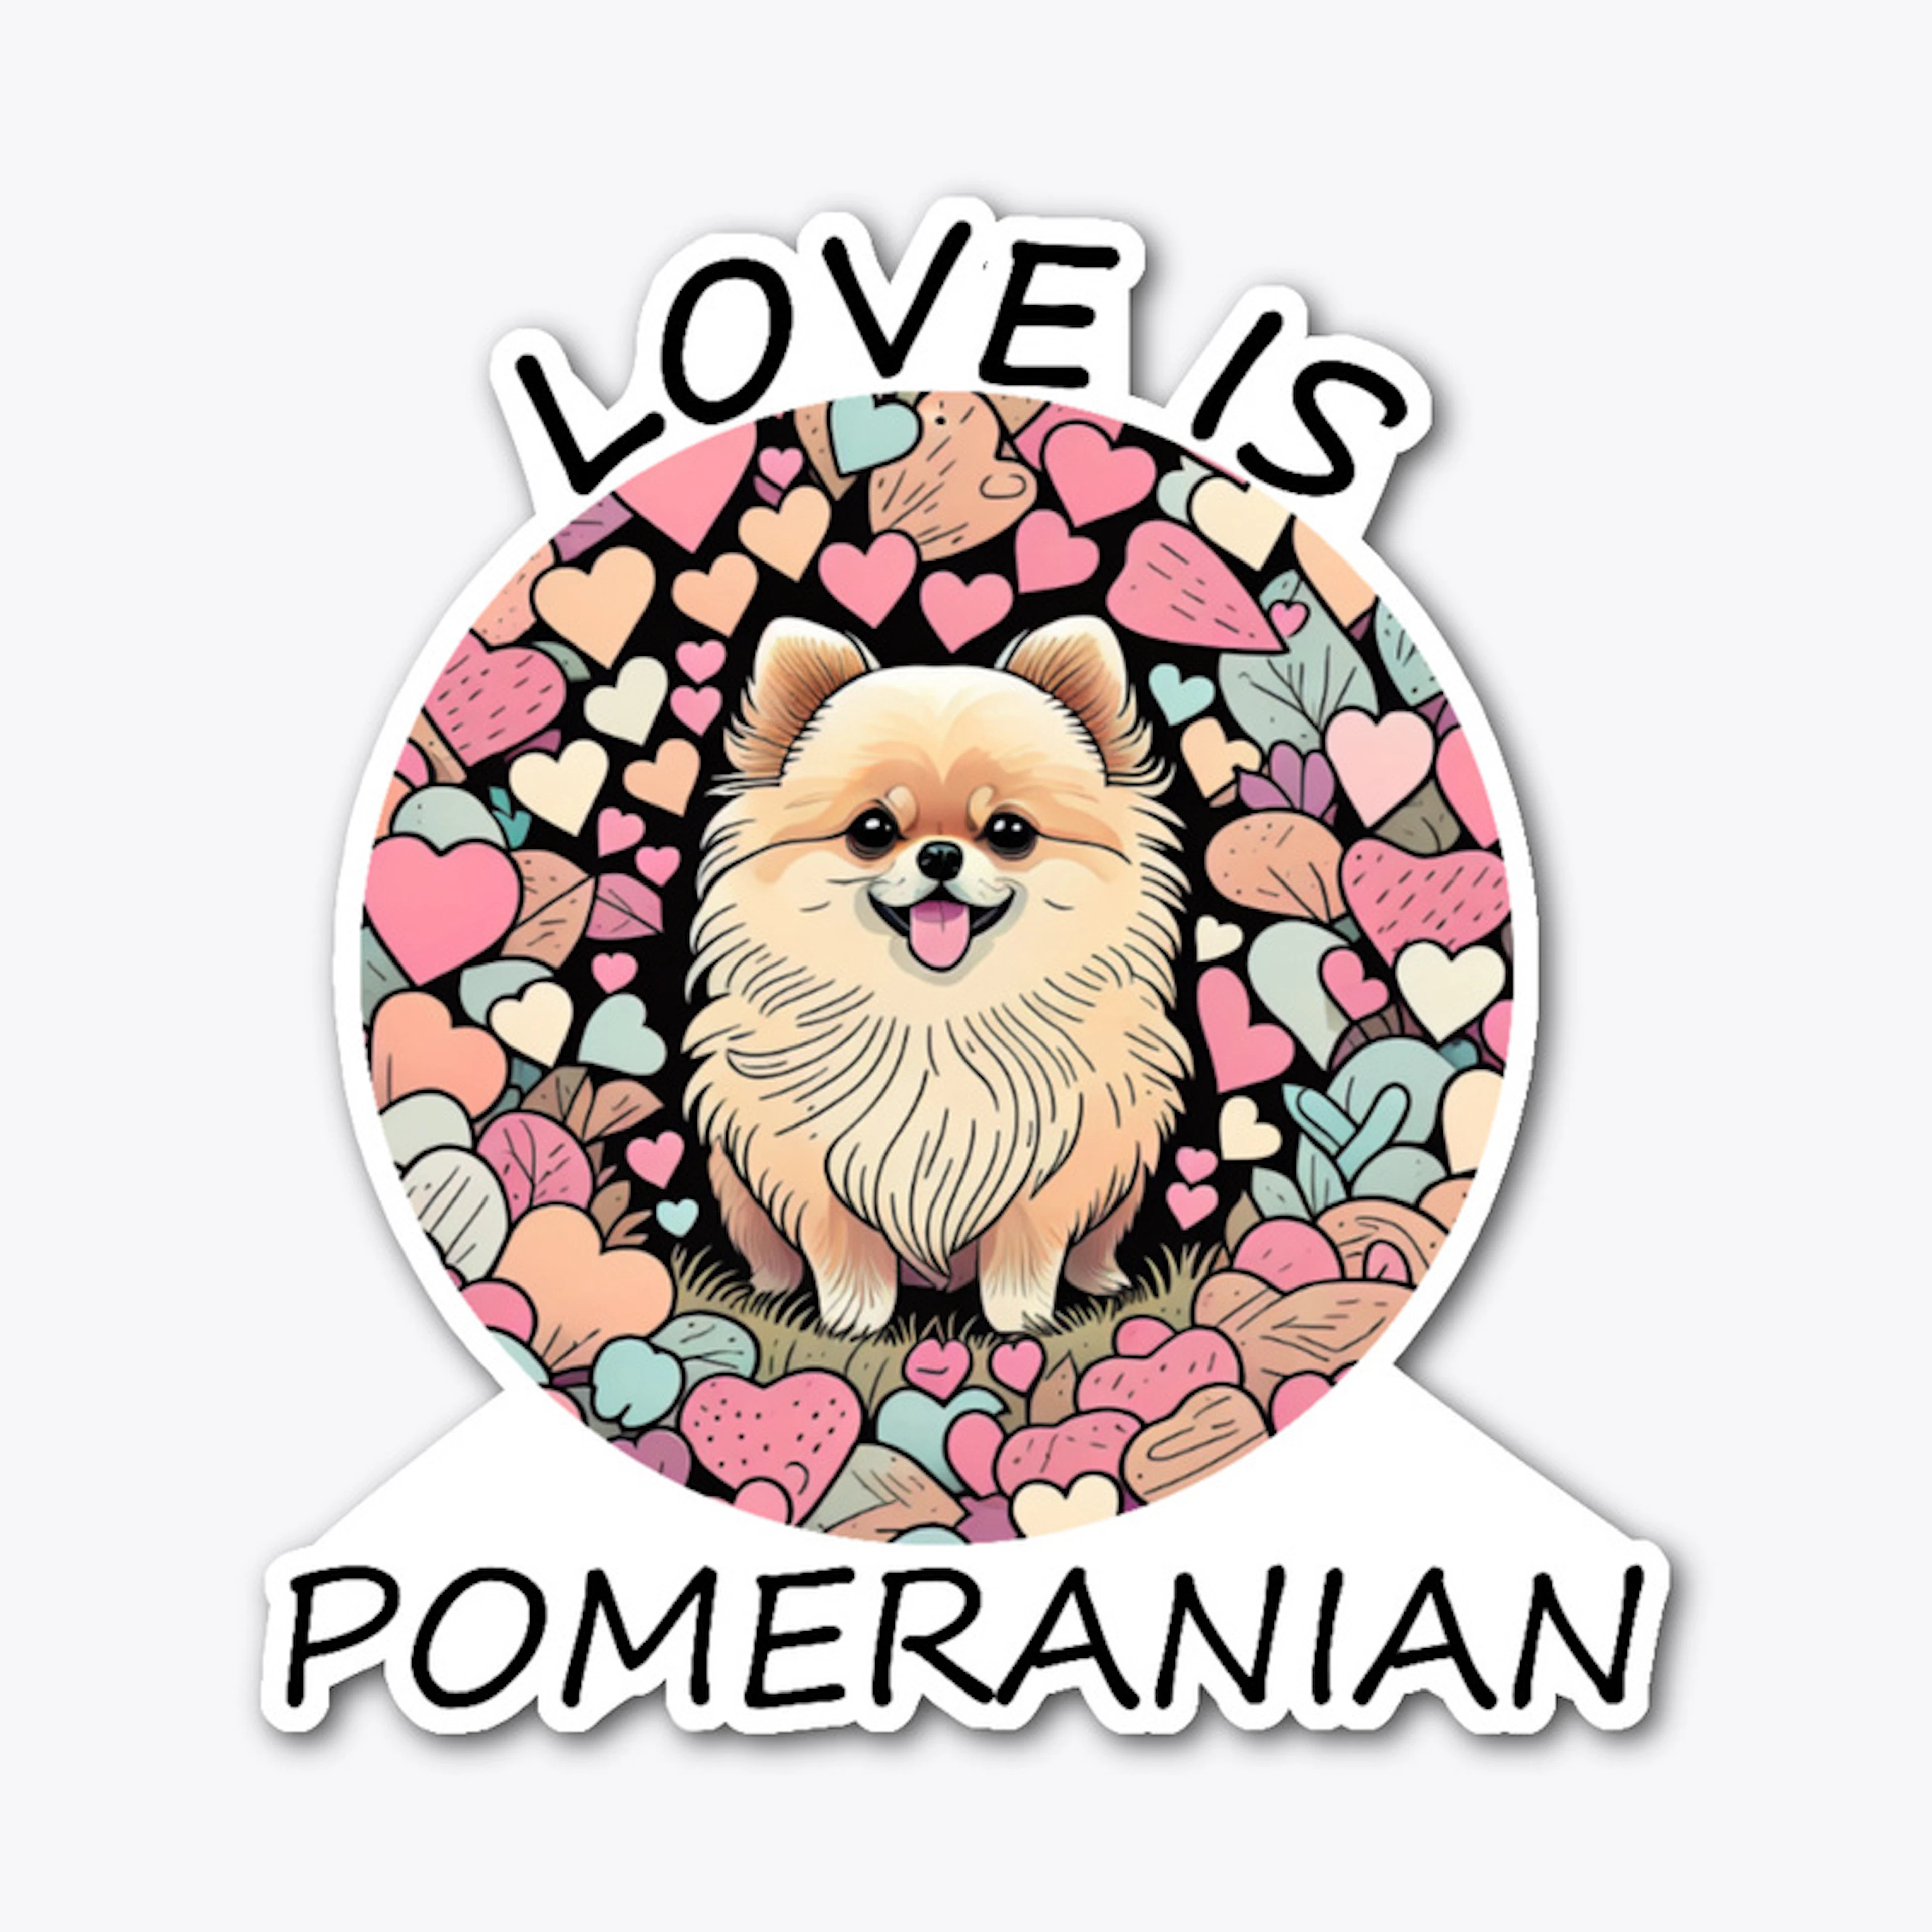 Love is Pomeranian